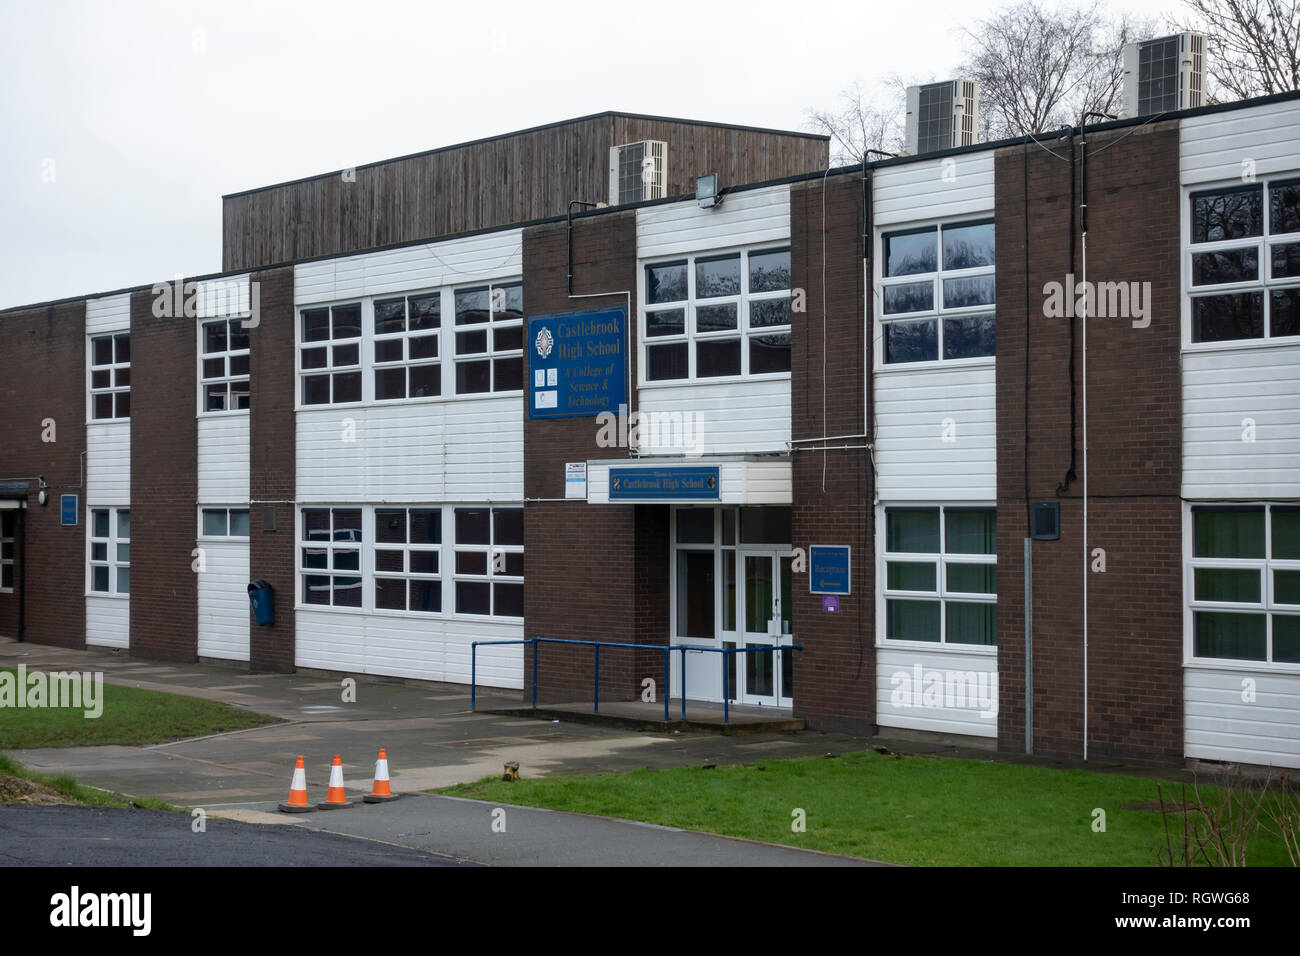 Le point d'être démoli Castlebrook High School building in Unsworth Bury. Banque D'Images